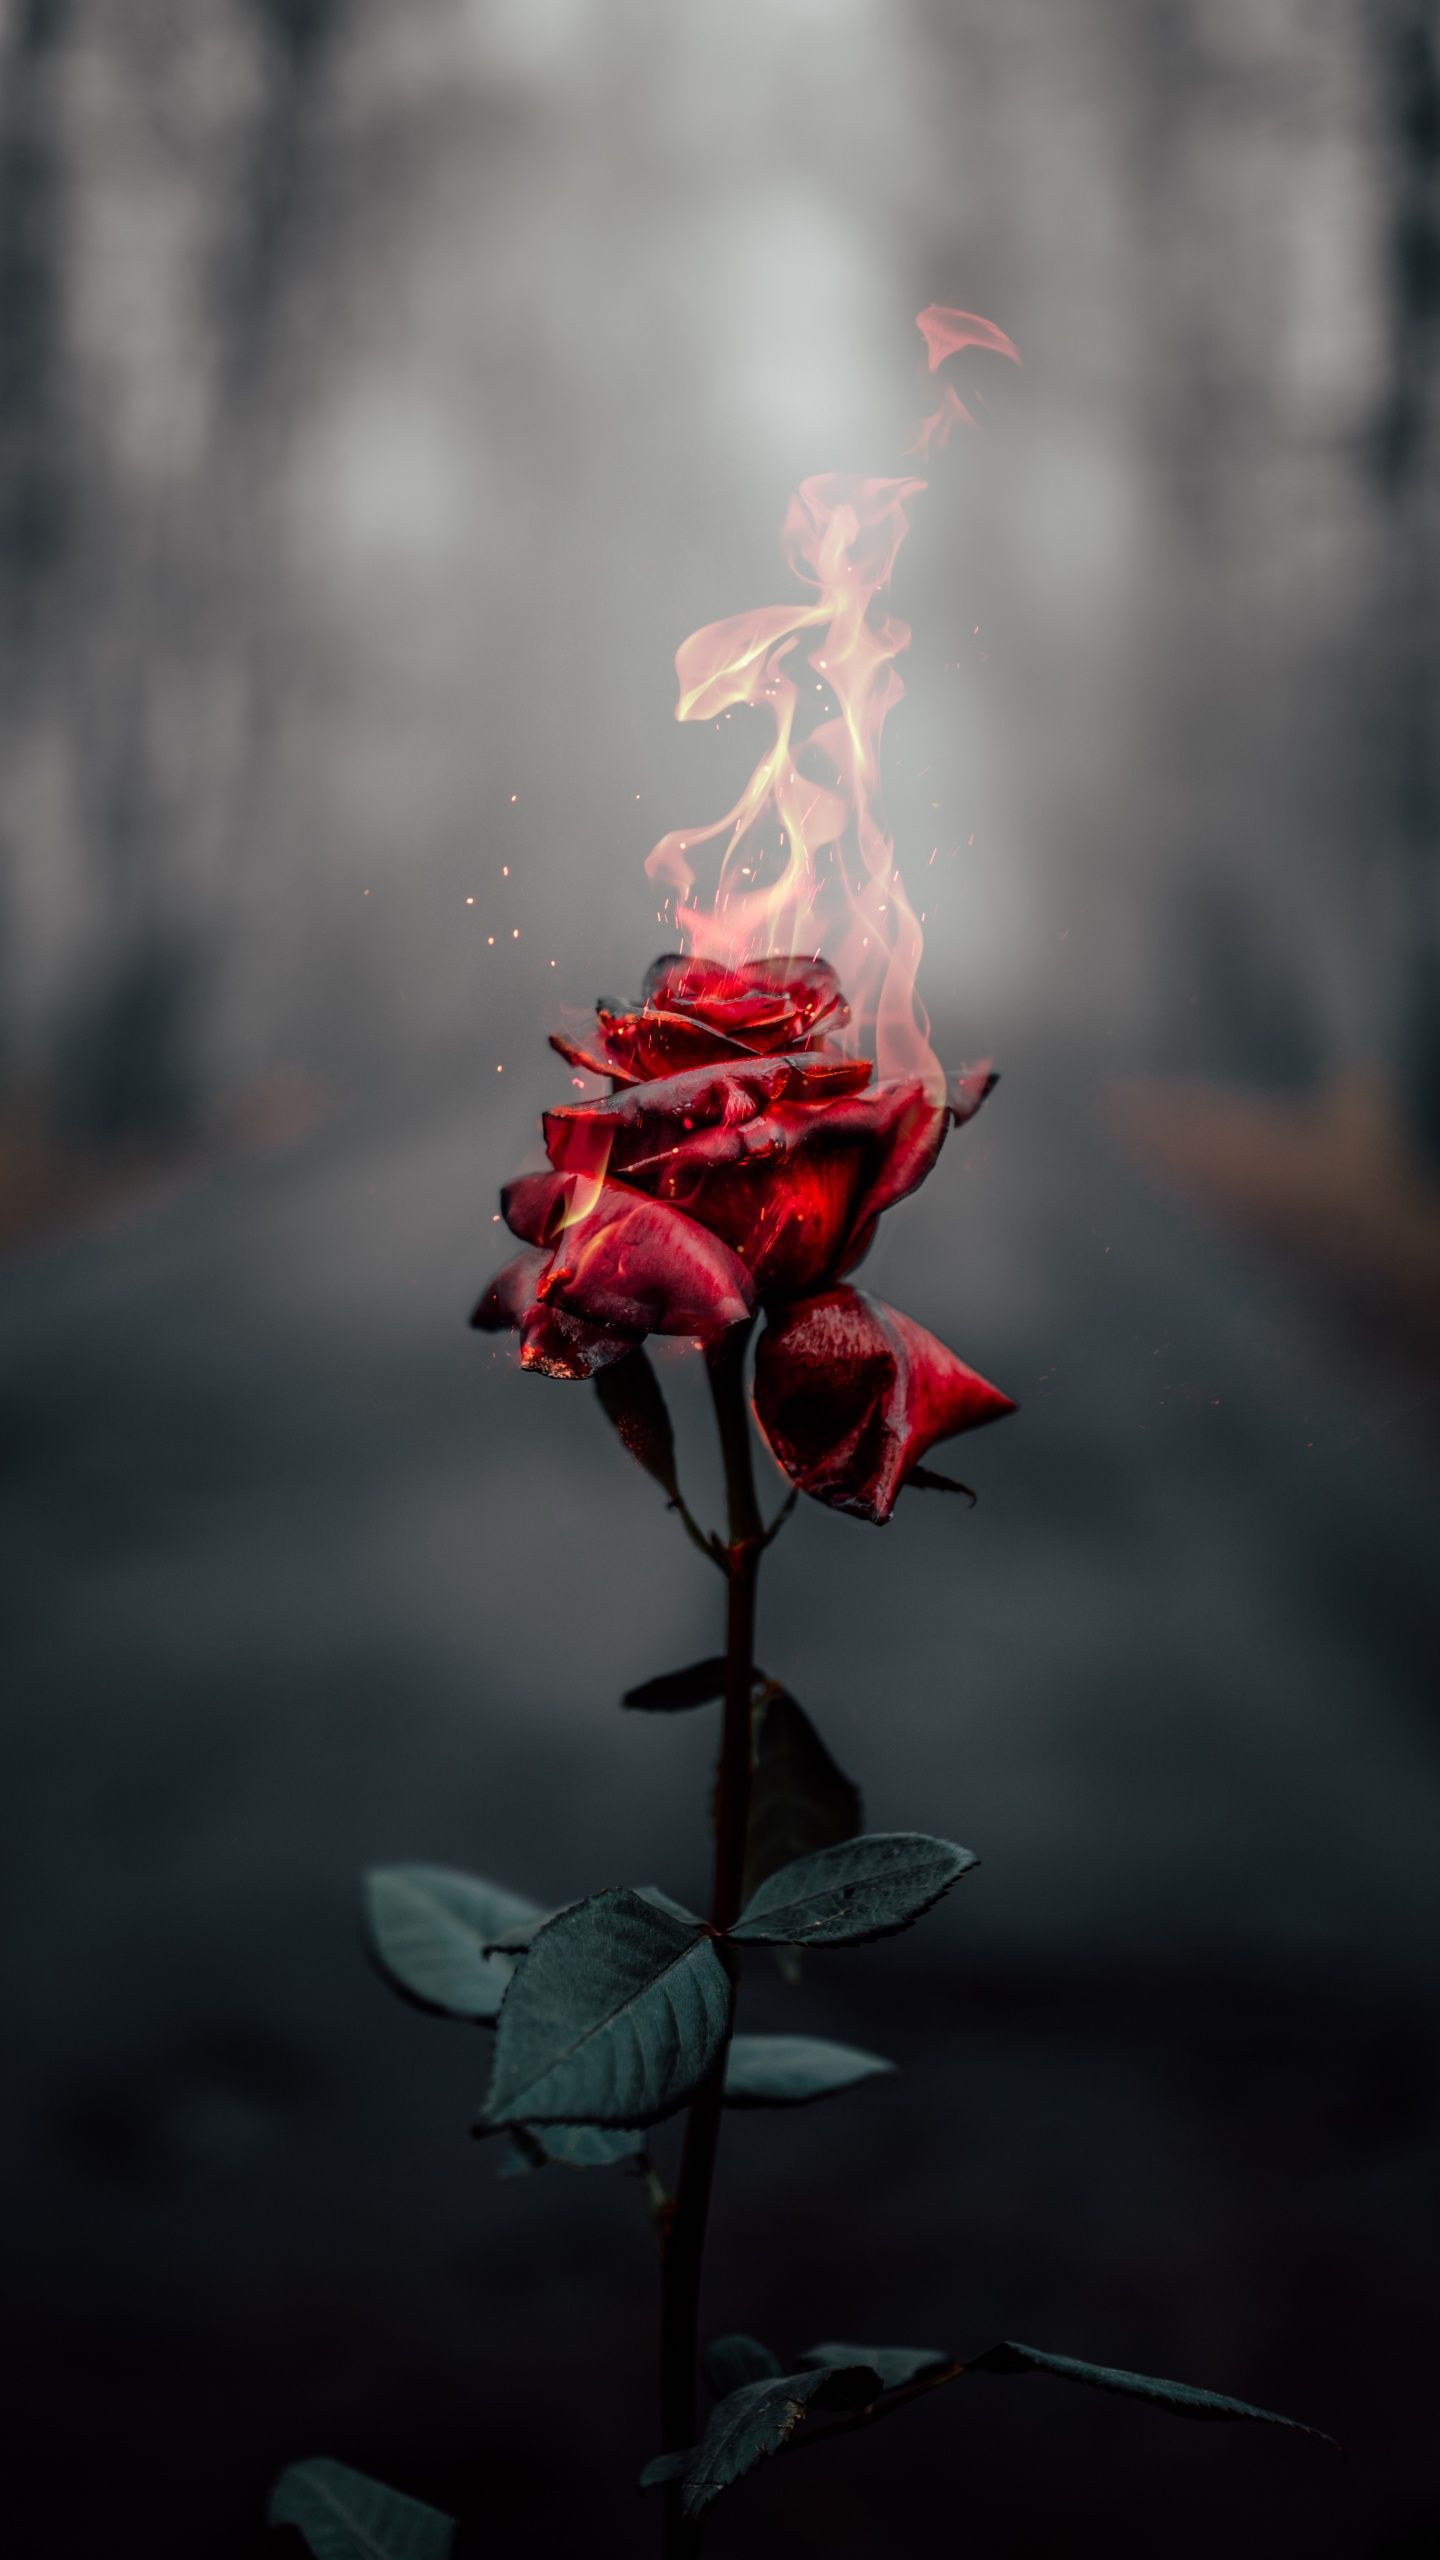 Rose flower Wallpaper 4K, Fire, Burning, Dark, Flowers